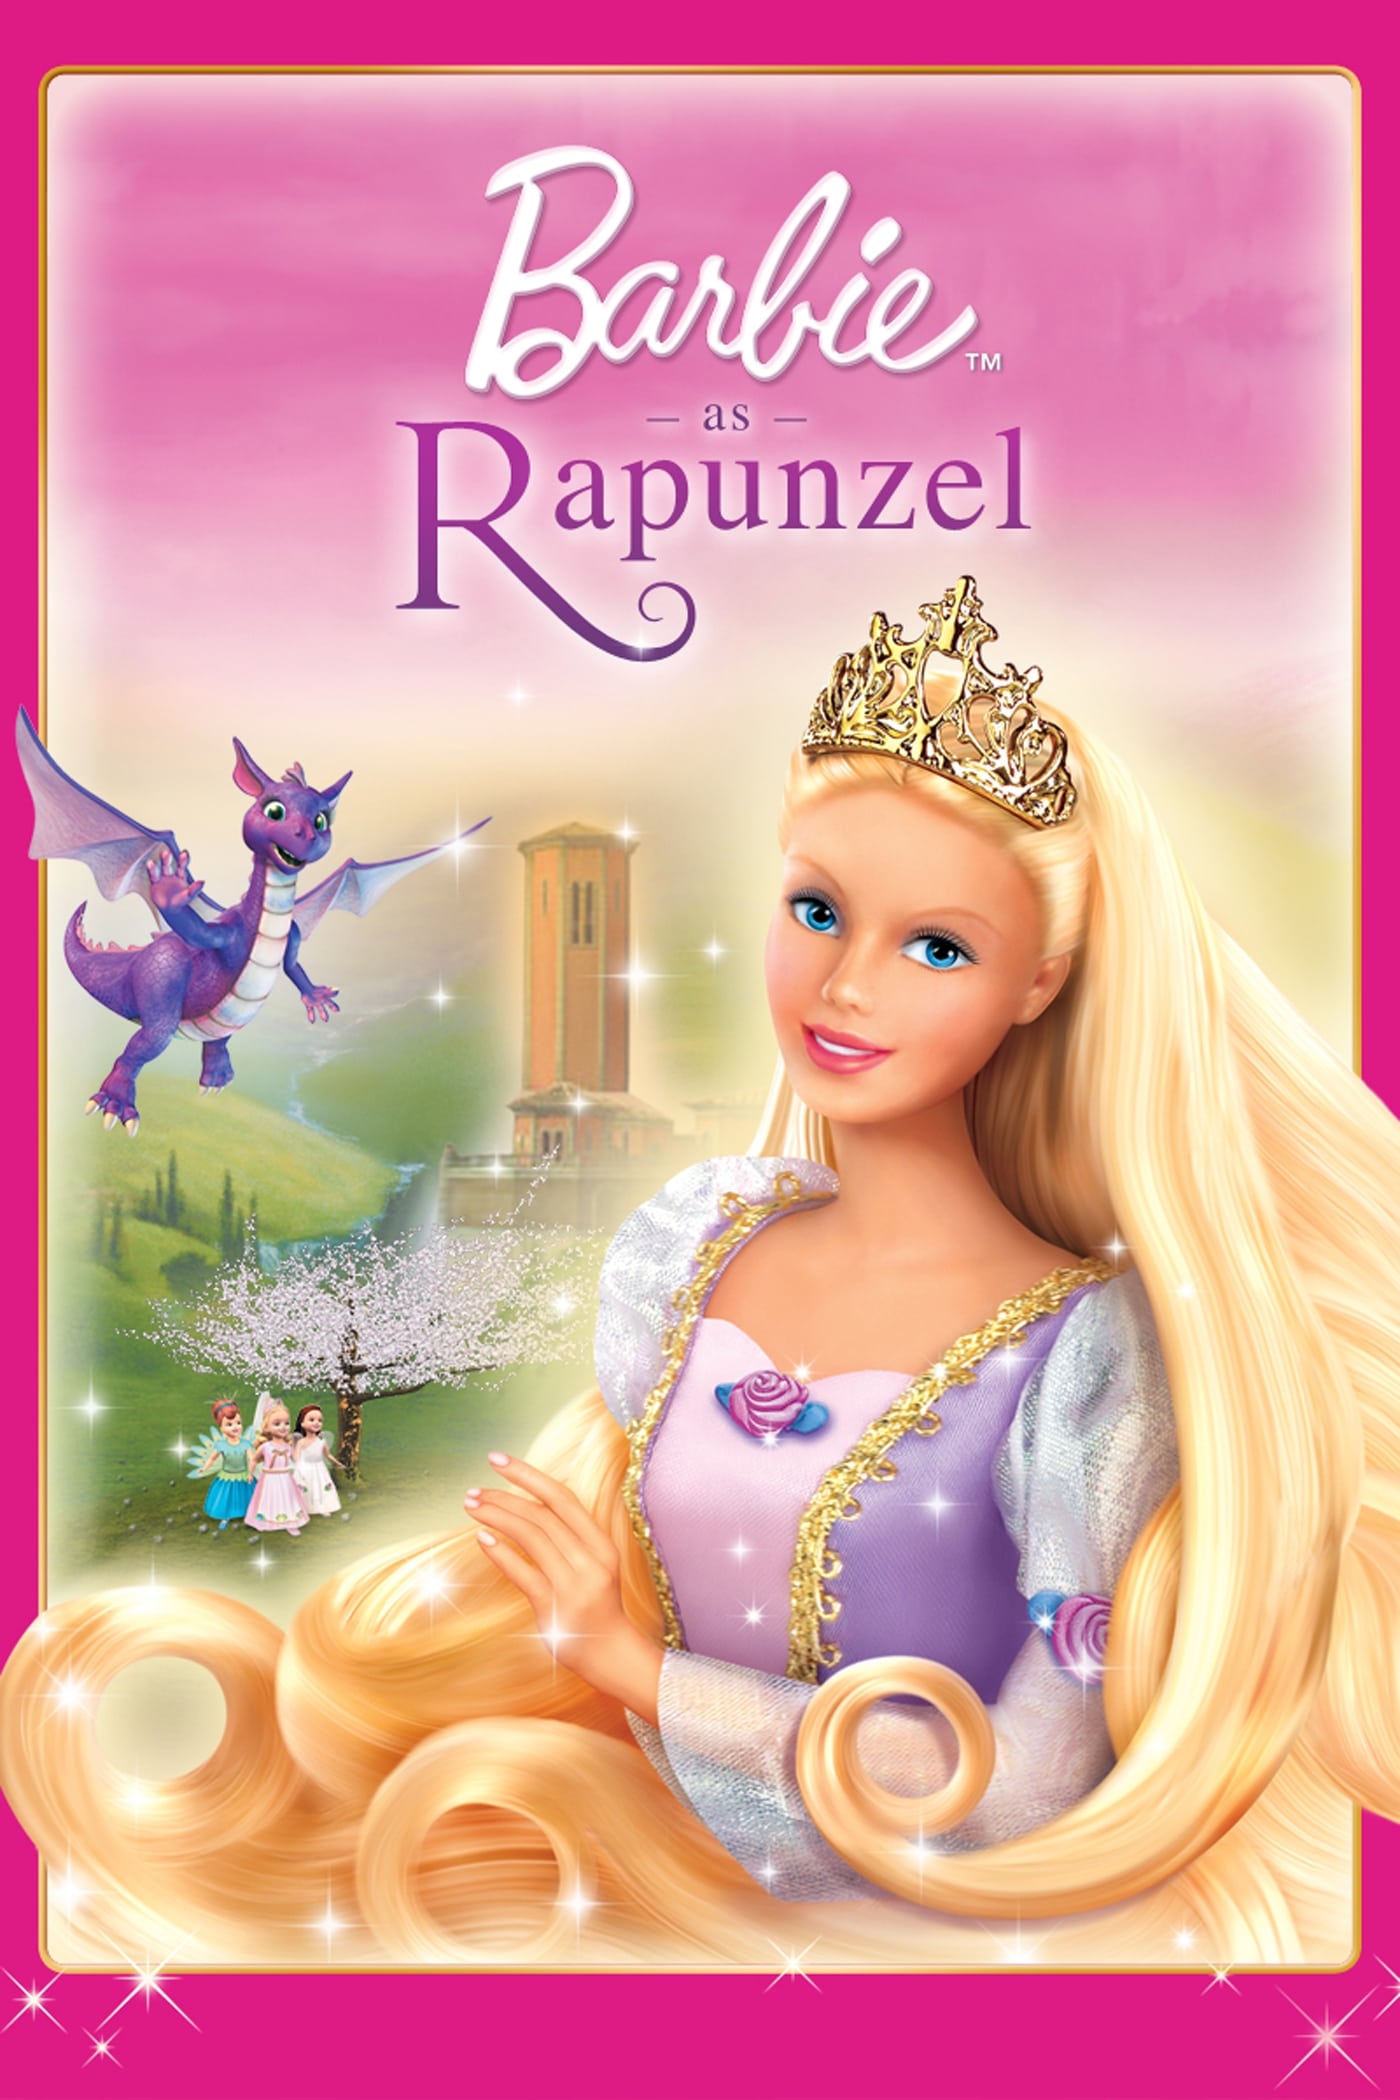 Barbie vào vai Rapunzel (Barbie as Rapunzel) [2002]